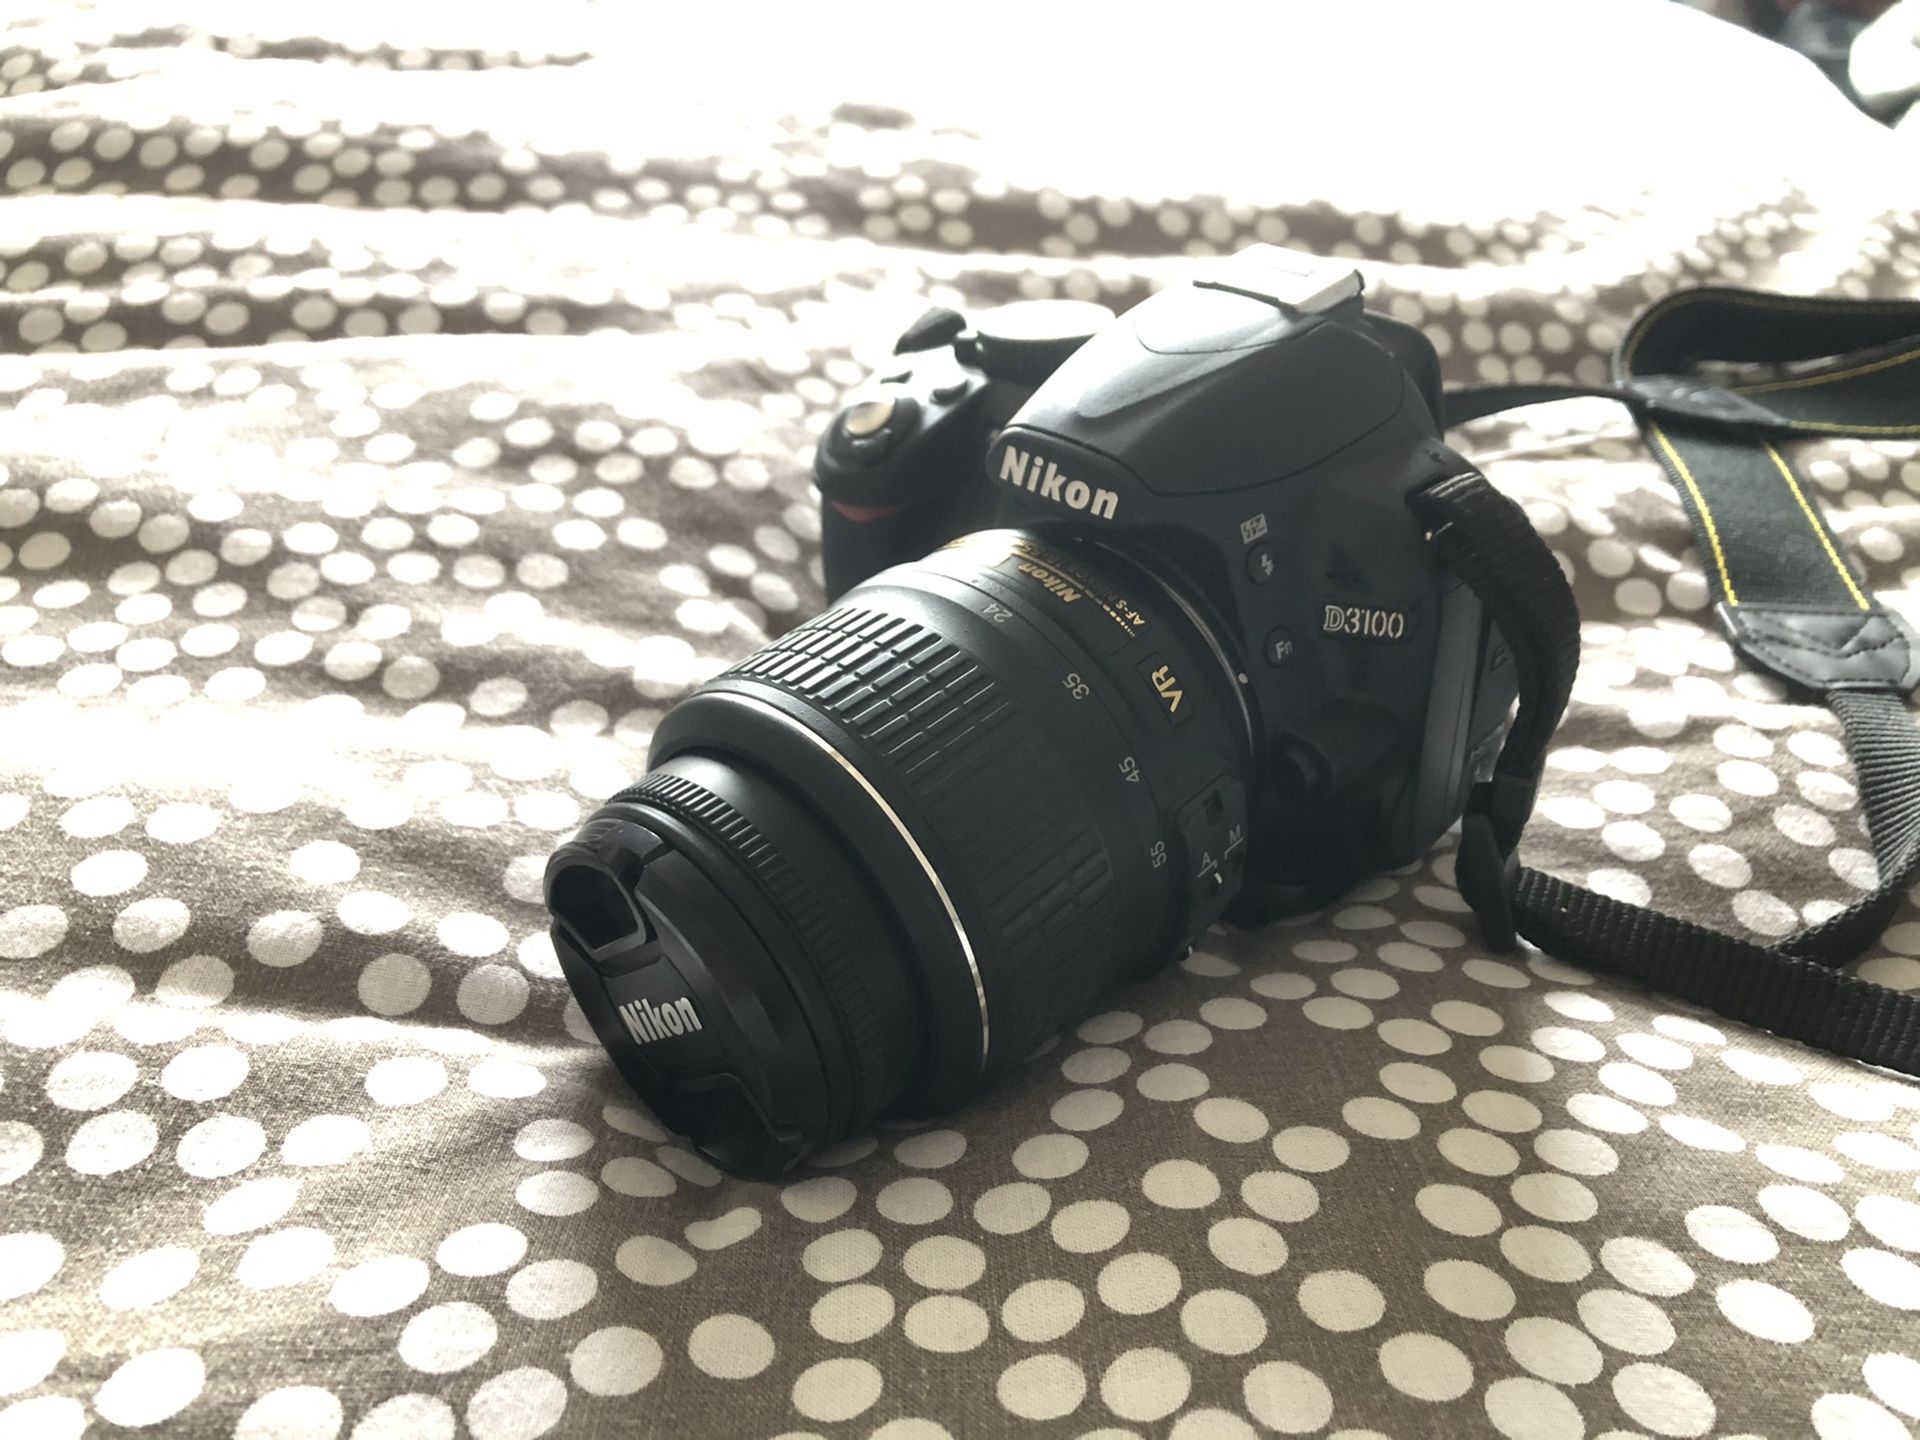 Nikon D3100 DSLR camera combo set